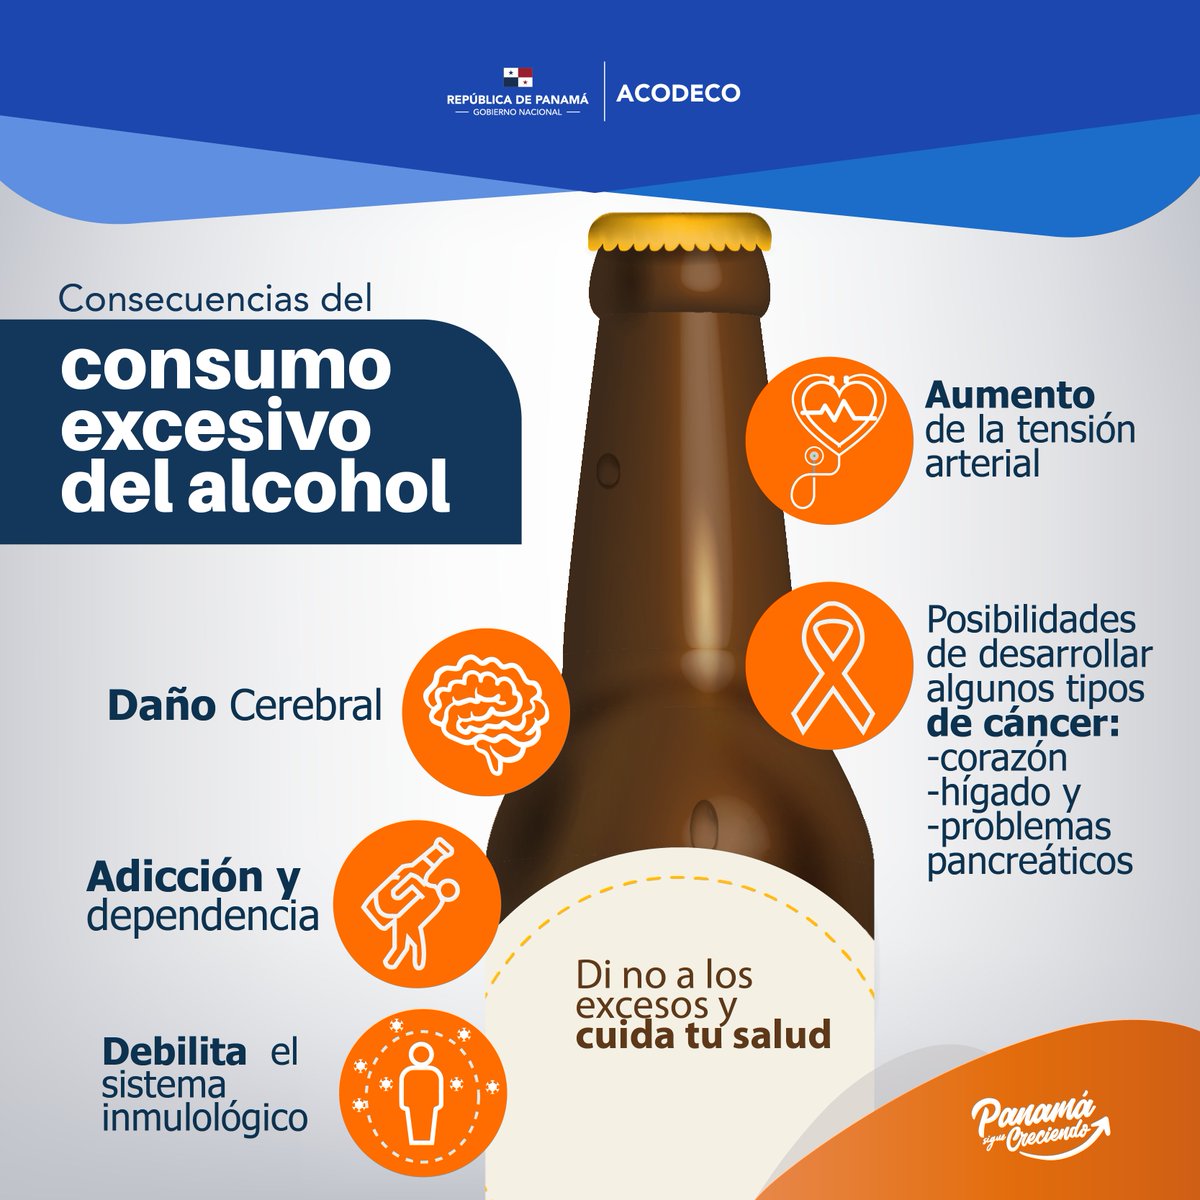 Está comprobado que el consumo excesivo de alcohol tiene riesgos para la salud, a largo plazo.  Sea prudente y controle su consumo.
#Consumoresponsable
#SiempreVigilantes🔍